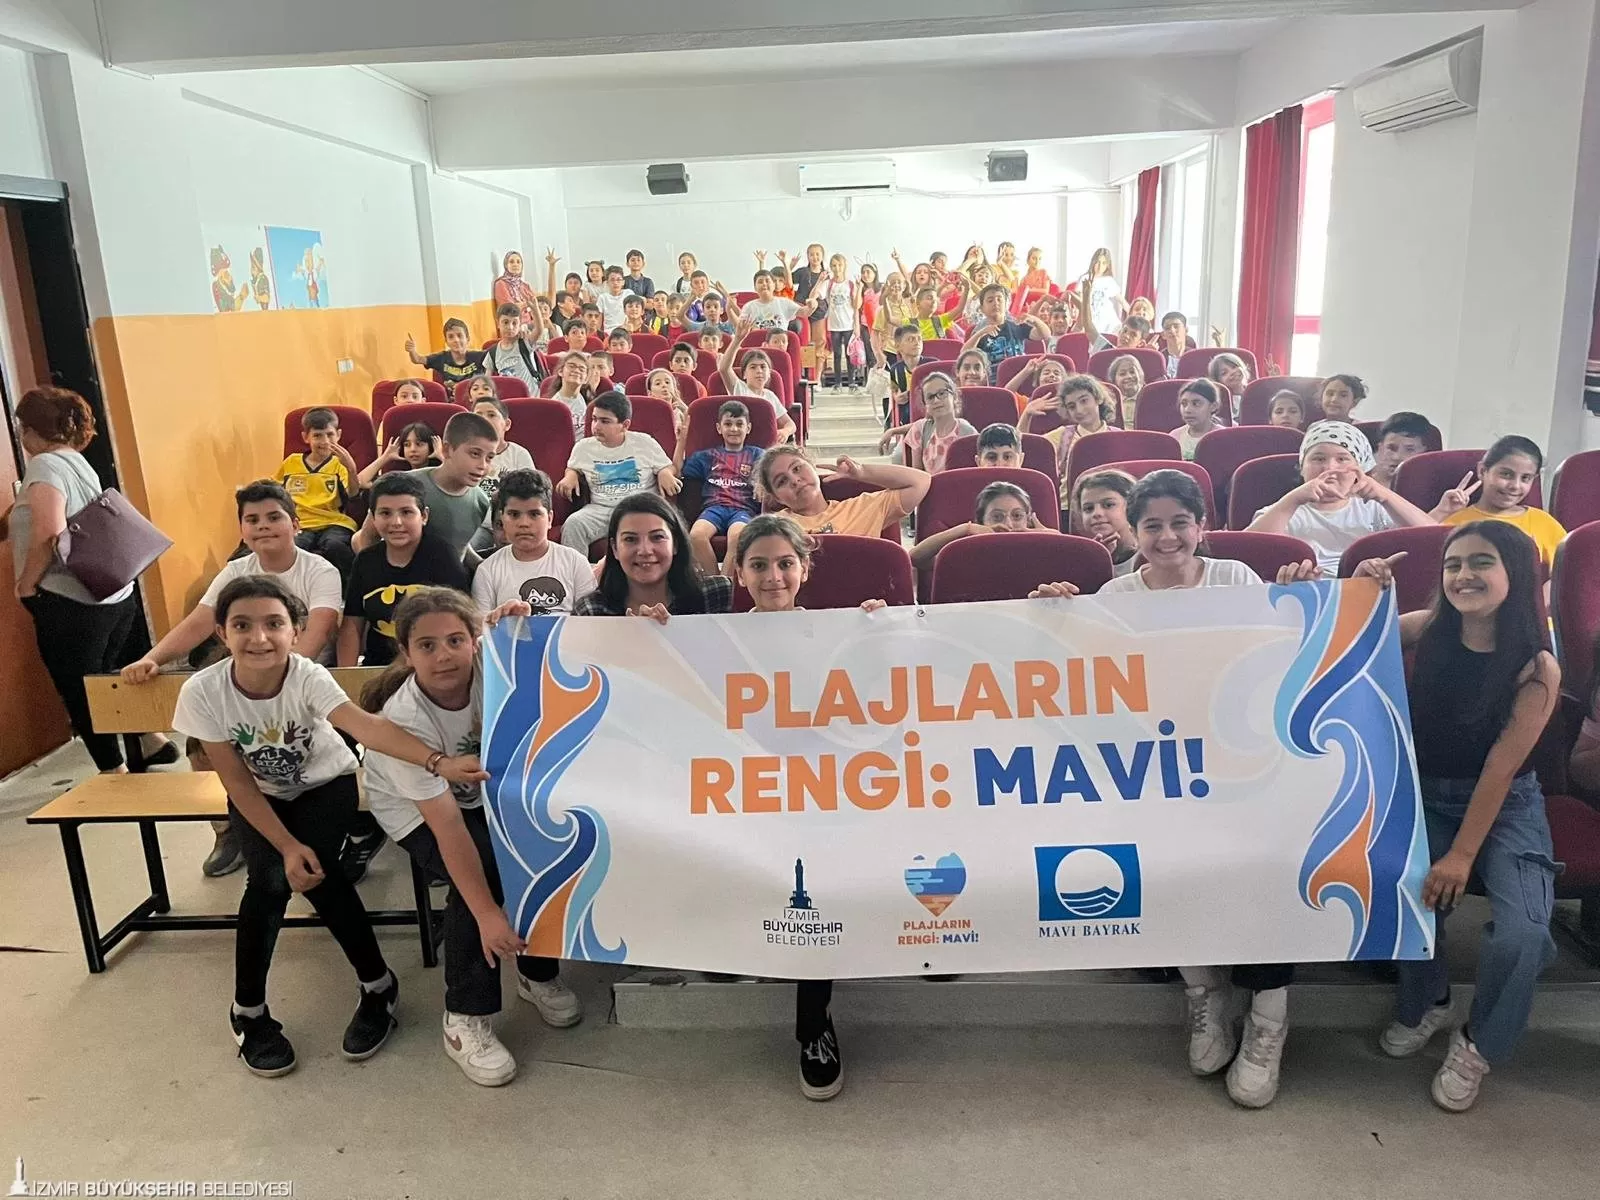 İzmir Büyükşehir Belediyesi'nin çevre yatırımları meyvesini veriyor! Bu yıl 40 halk plajında mavi bayrak ödülünü koruyan İzmir'de toplam mavi bayraklı plaj sayısı 64'e yükseldi. 